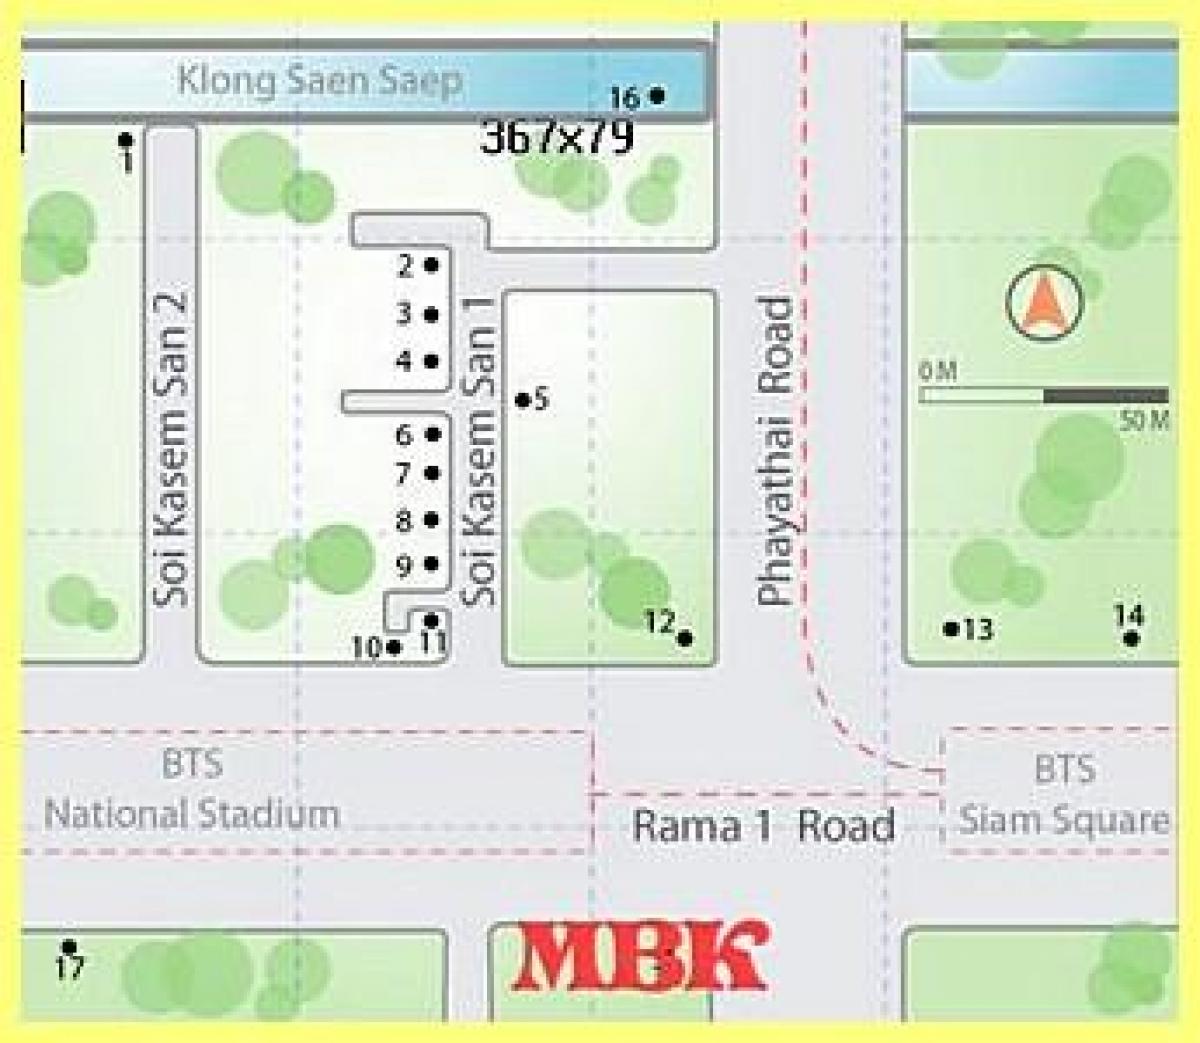 mbk centre comercial de bangkok mapa